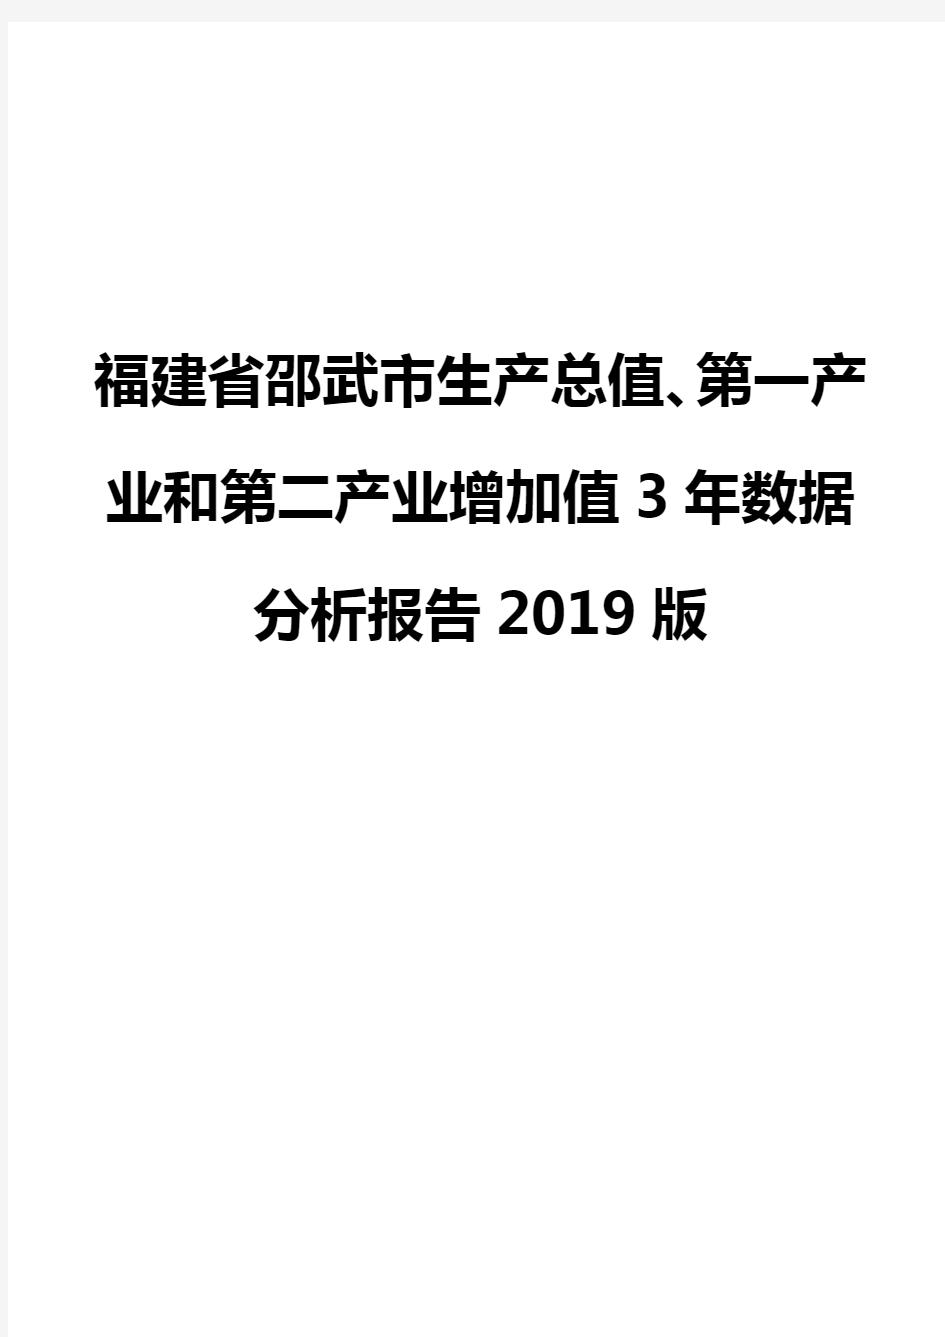 福建省邵武市生产总值、第一产业和第二产业增加值3年数据分析报告2019版